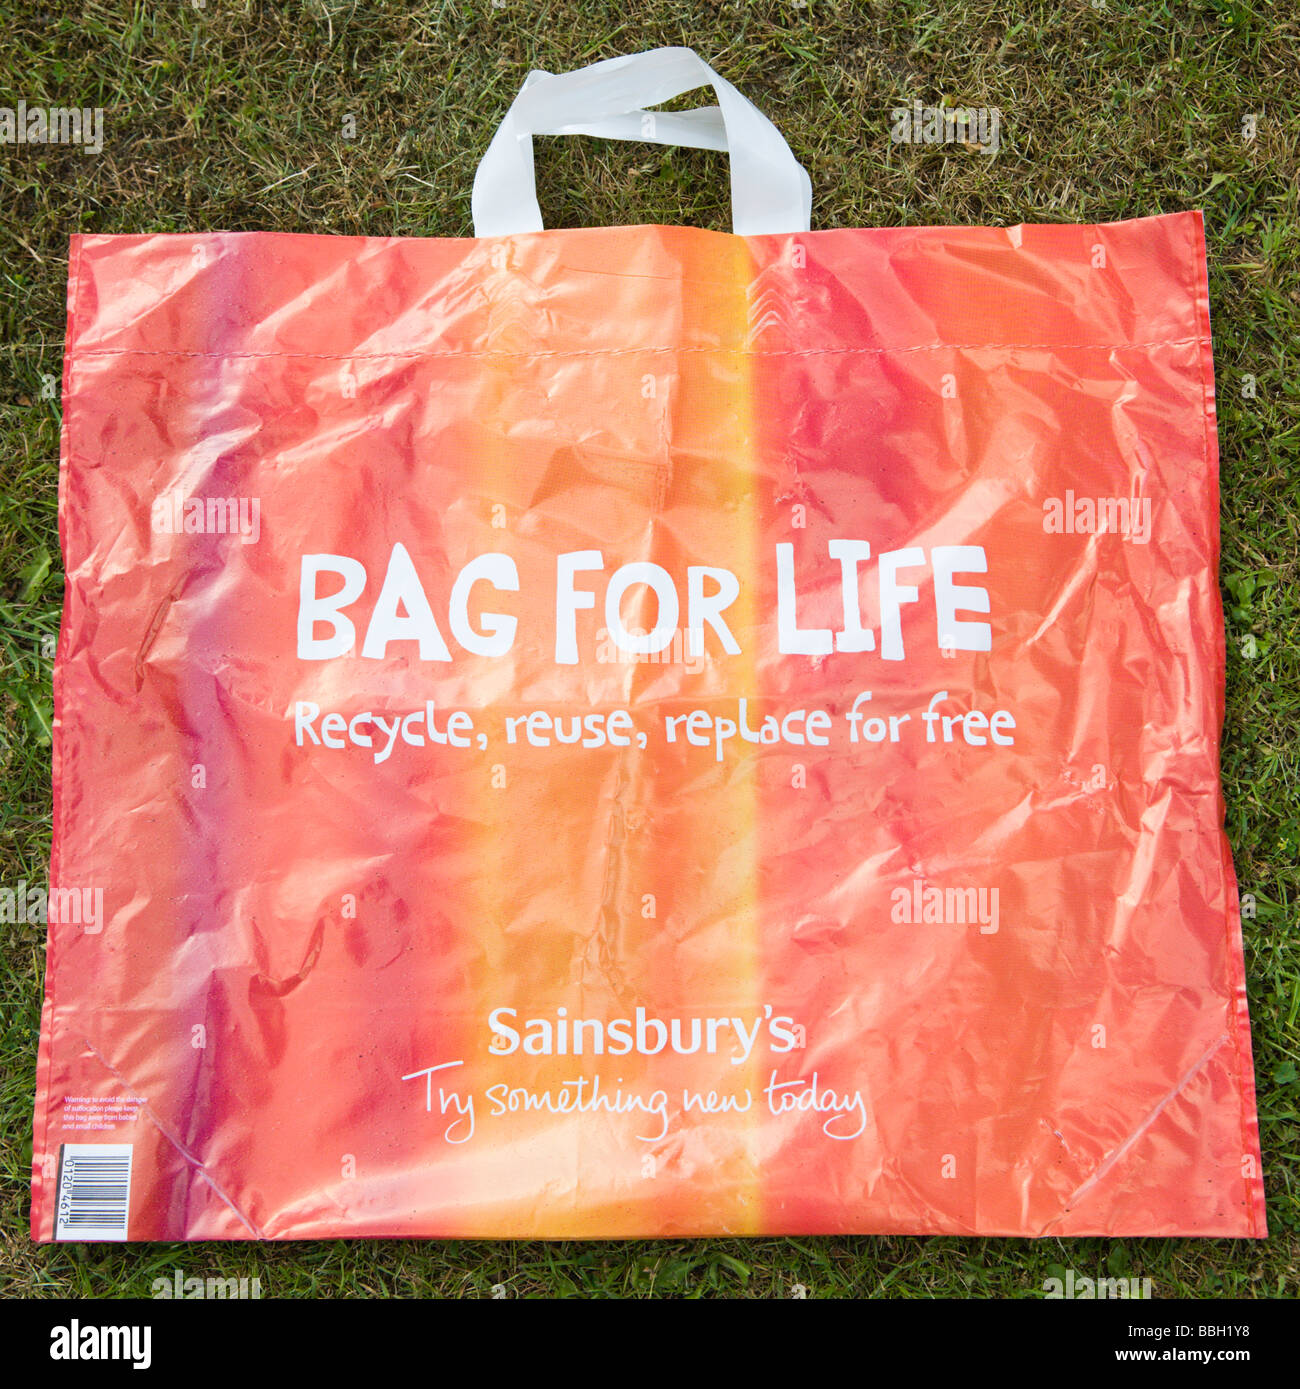 bag for life